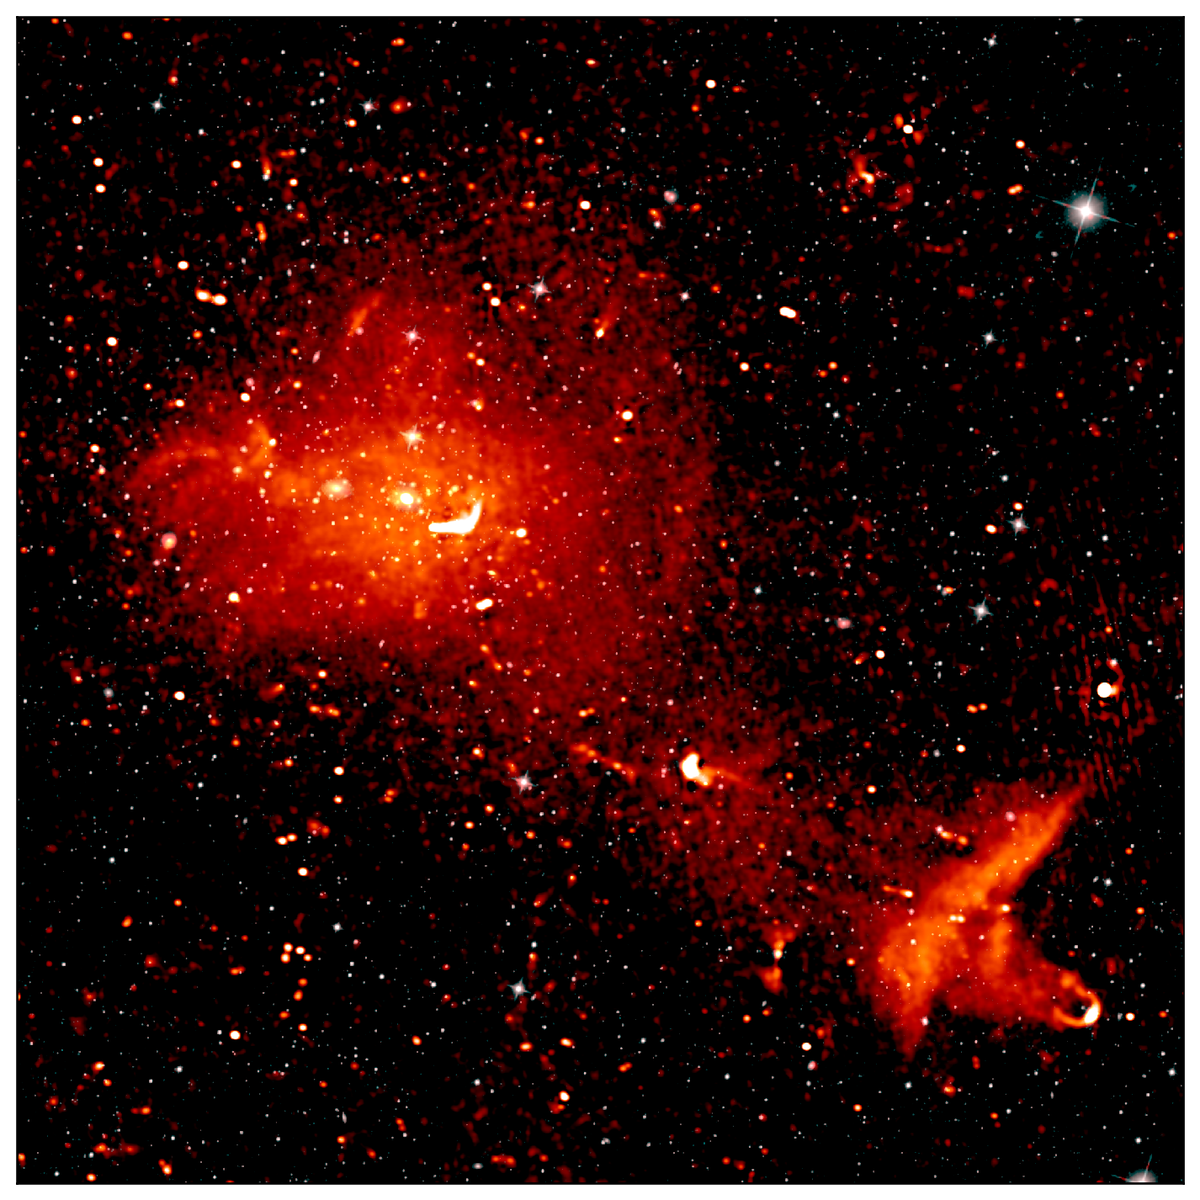 Der Coma-Cluster, hier in einer Aufnahme des europäischen Radioteleskops LOFAR im Radio- und Infrarot-Bereich gezeigt, ist 300 Millionen Lichtjahre von der Erde entfernt und besteht aus mehr als 1.000 Galaxien. Eine Untersuchung des Clusters in den 1930er Jahren gab erste Hinweise auf die Notwendigkeit der Existenz von dunkler Materie.